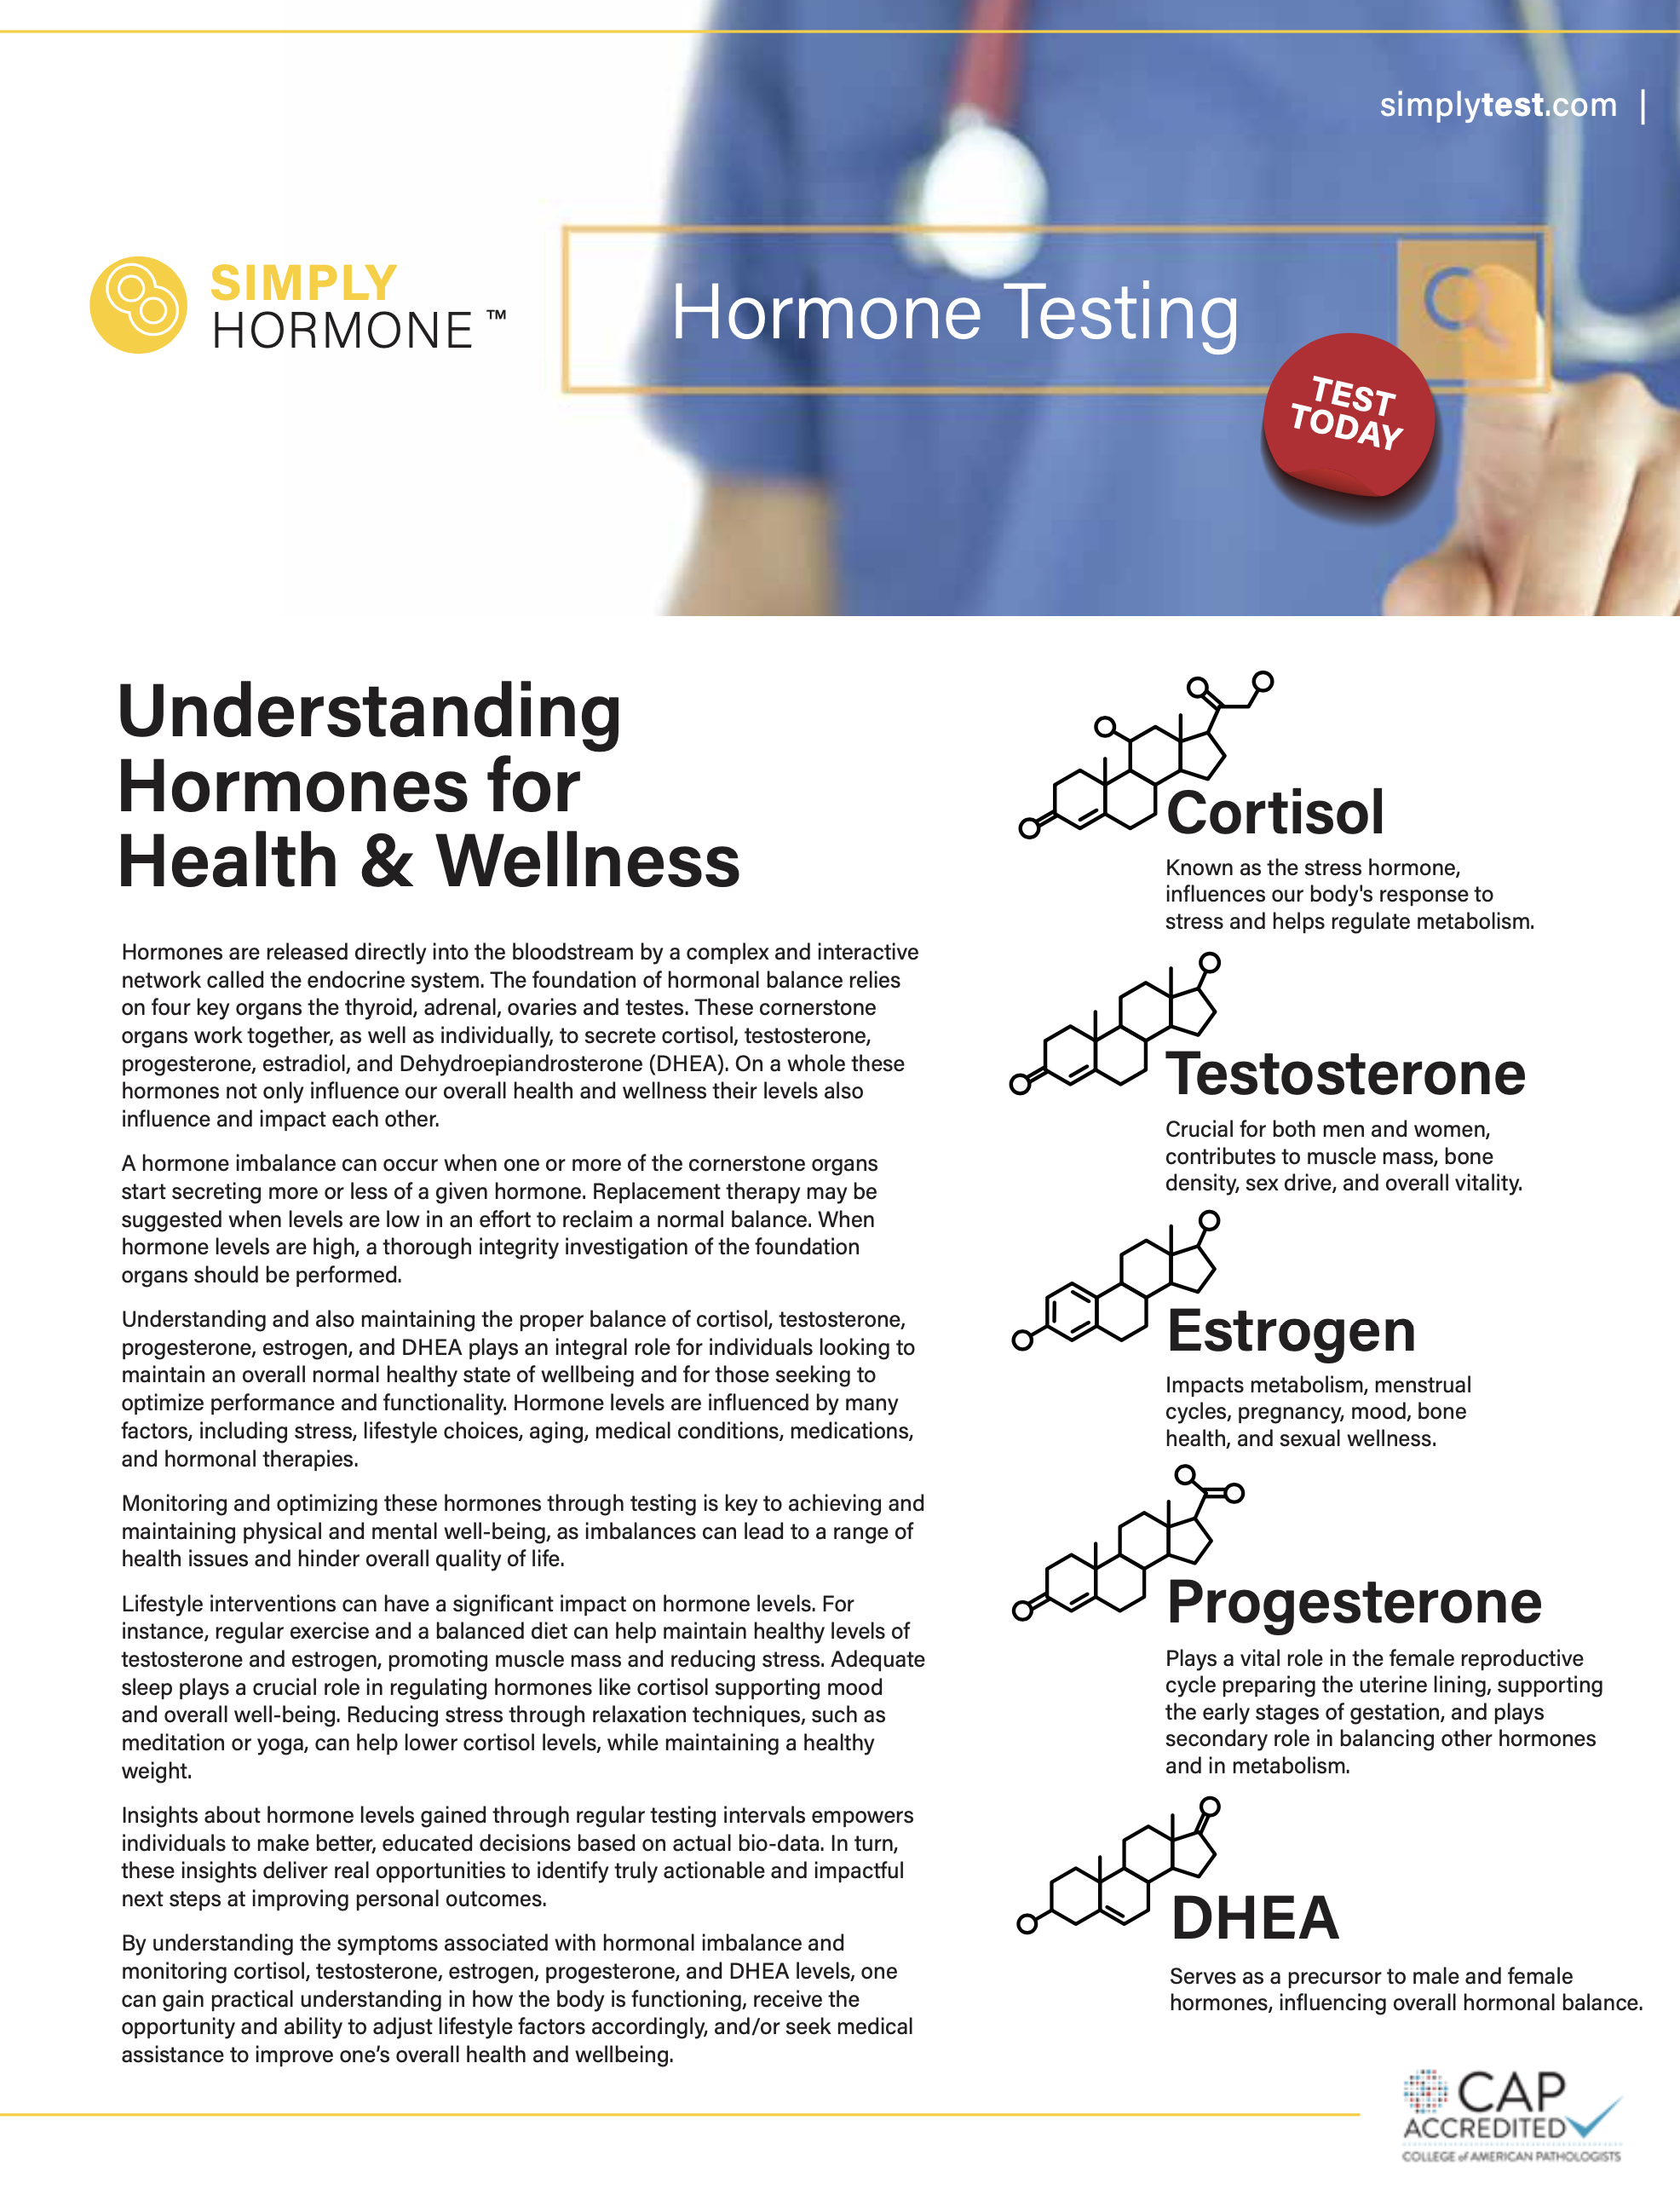 General 5-Panel Hormone Testing Fact Sheet